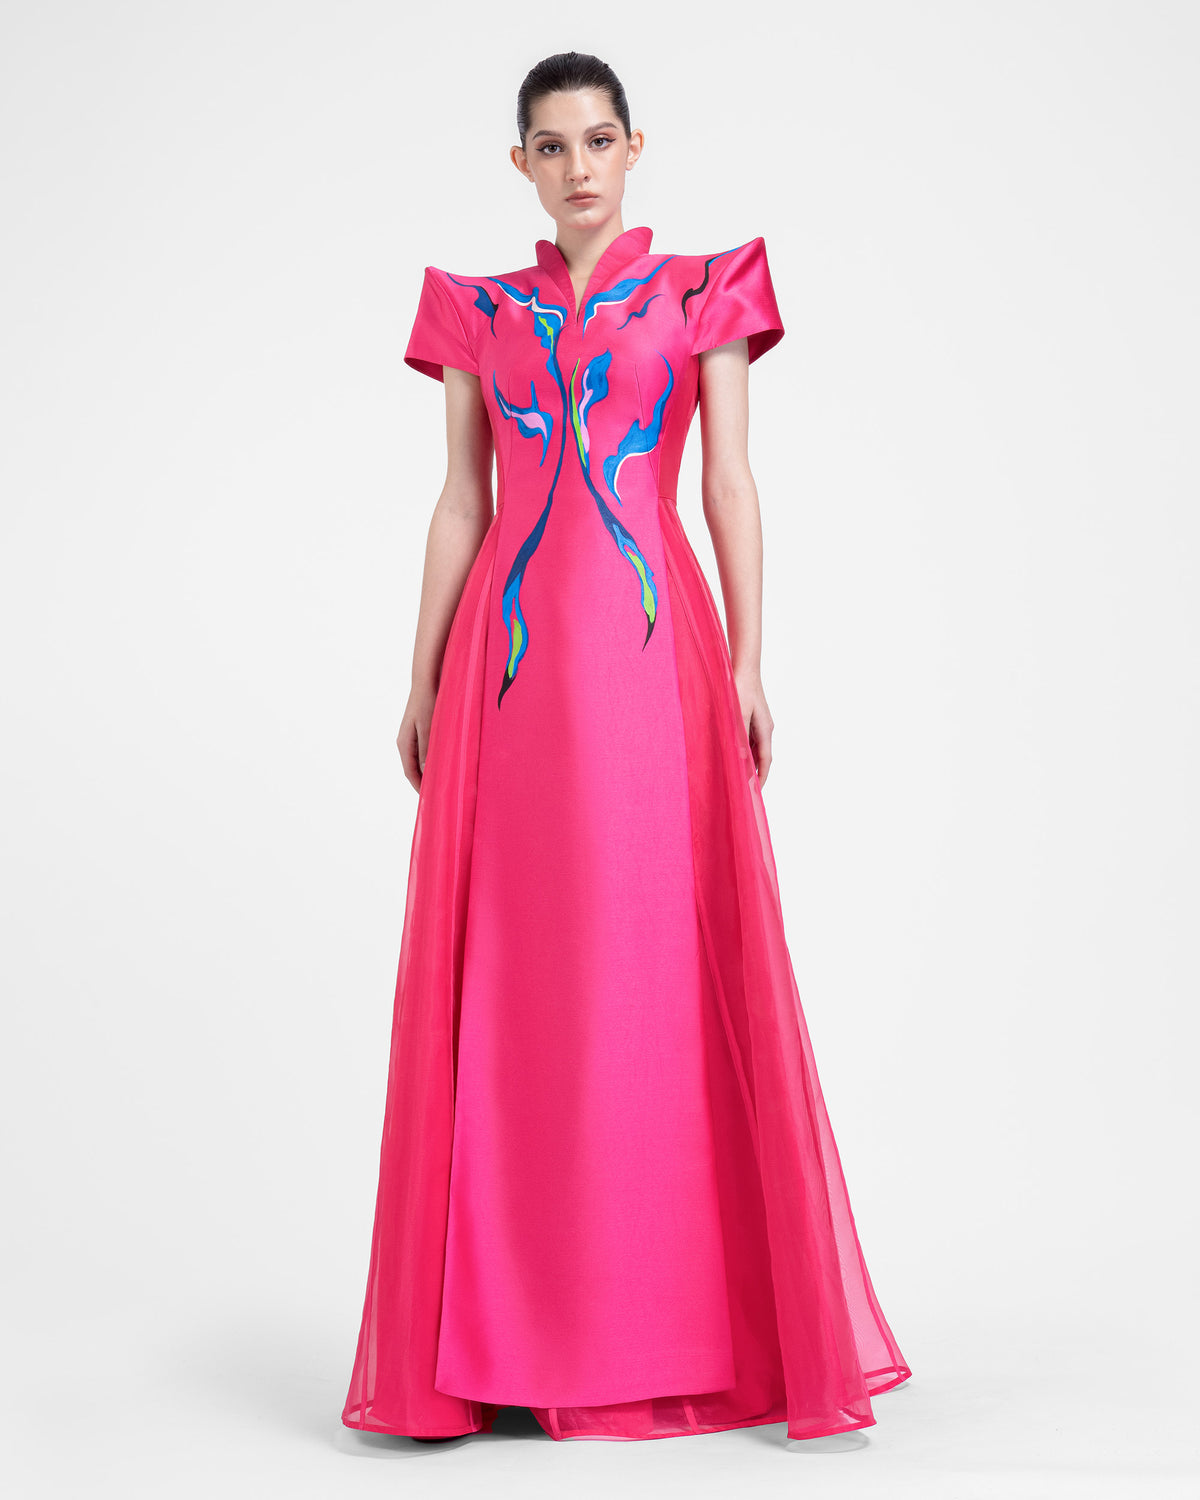 Bloom - Structured Shoulder Pink Evening Dress